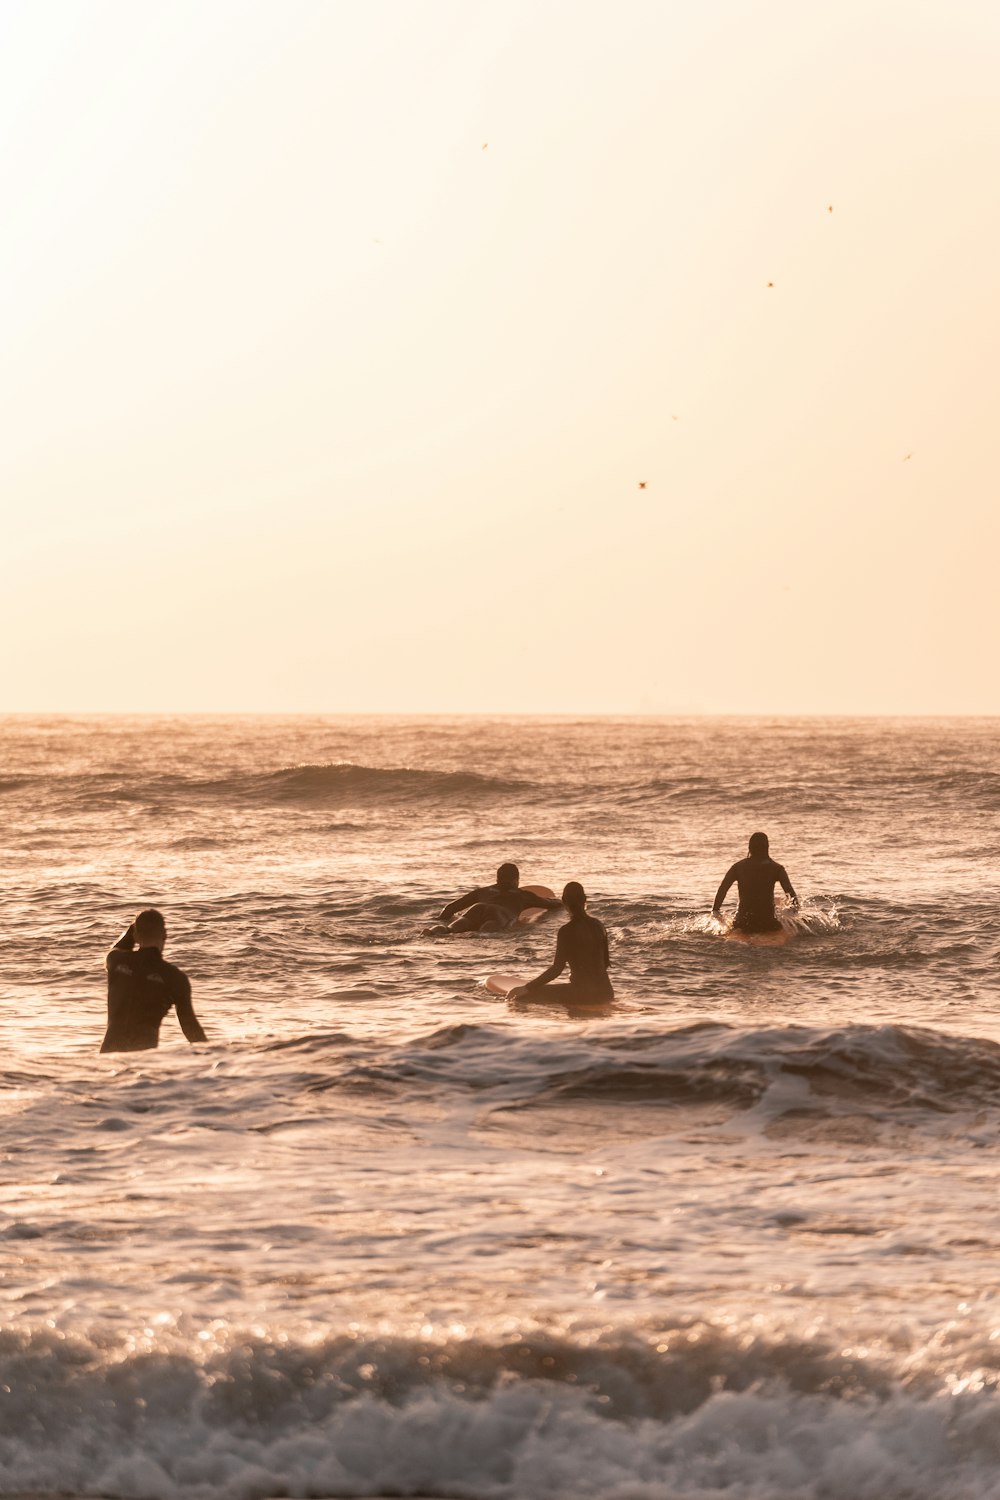 Un grupo de personas surfeando en el mar